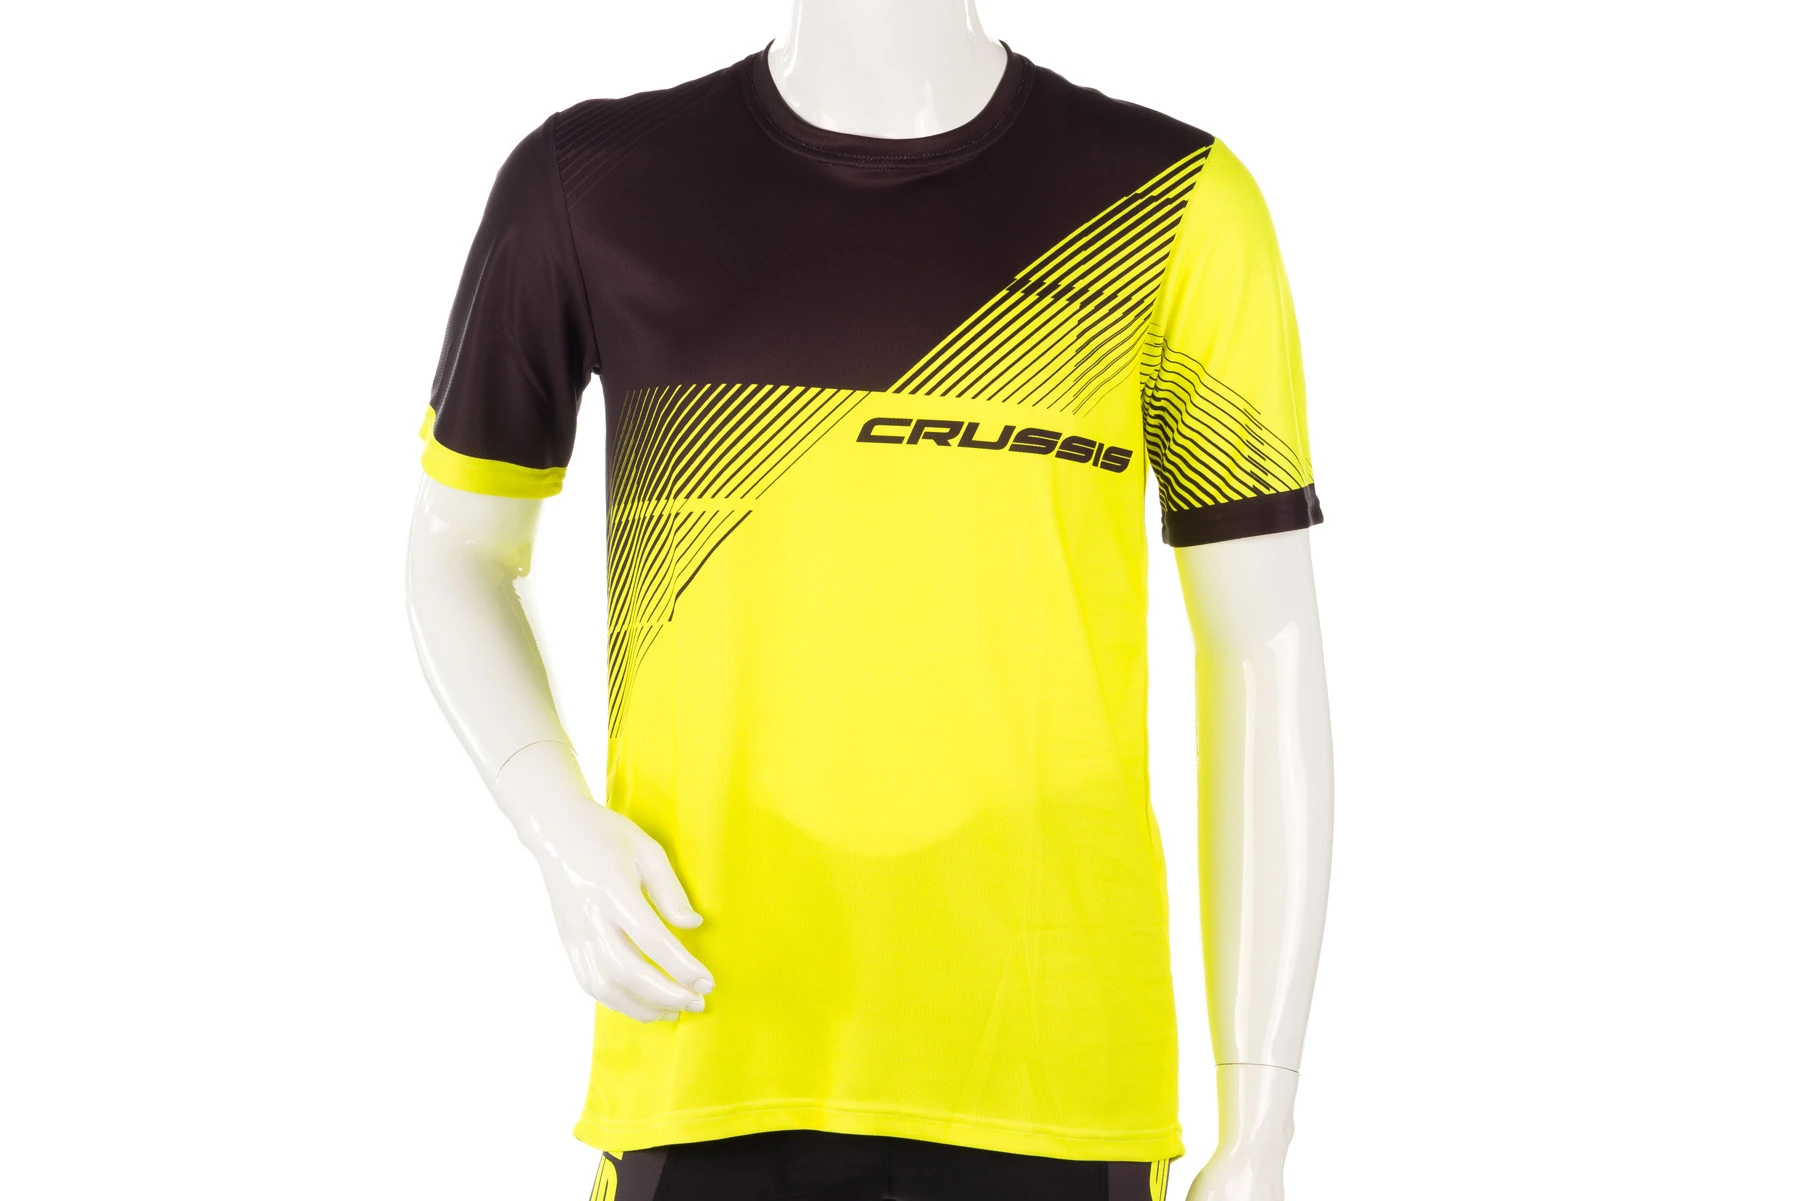 Crussis  Sportovní tričko CRUSSIS, krátký rukáv, žlutá/černá